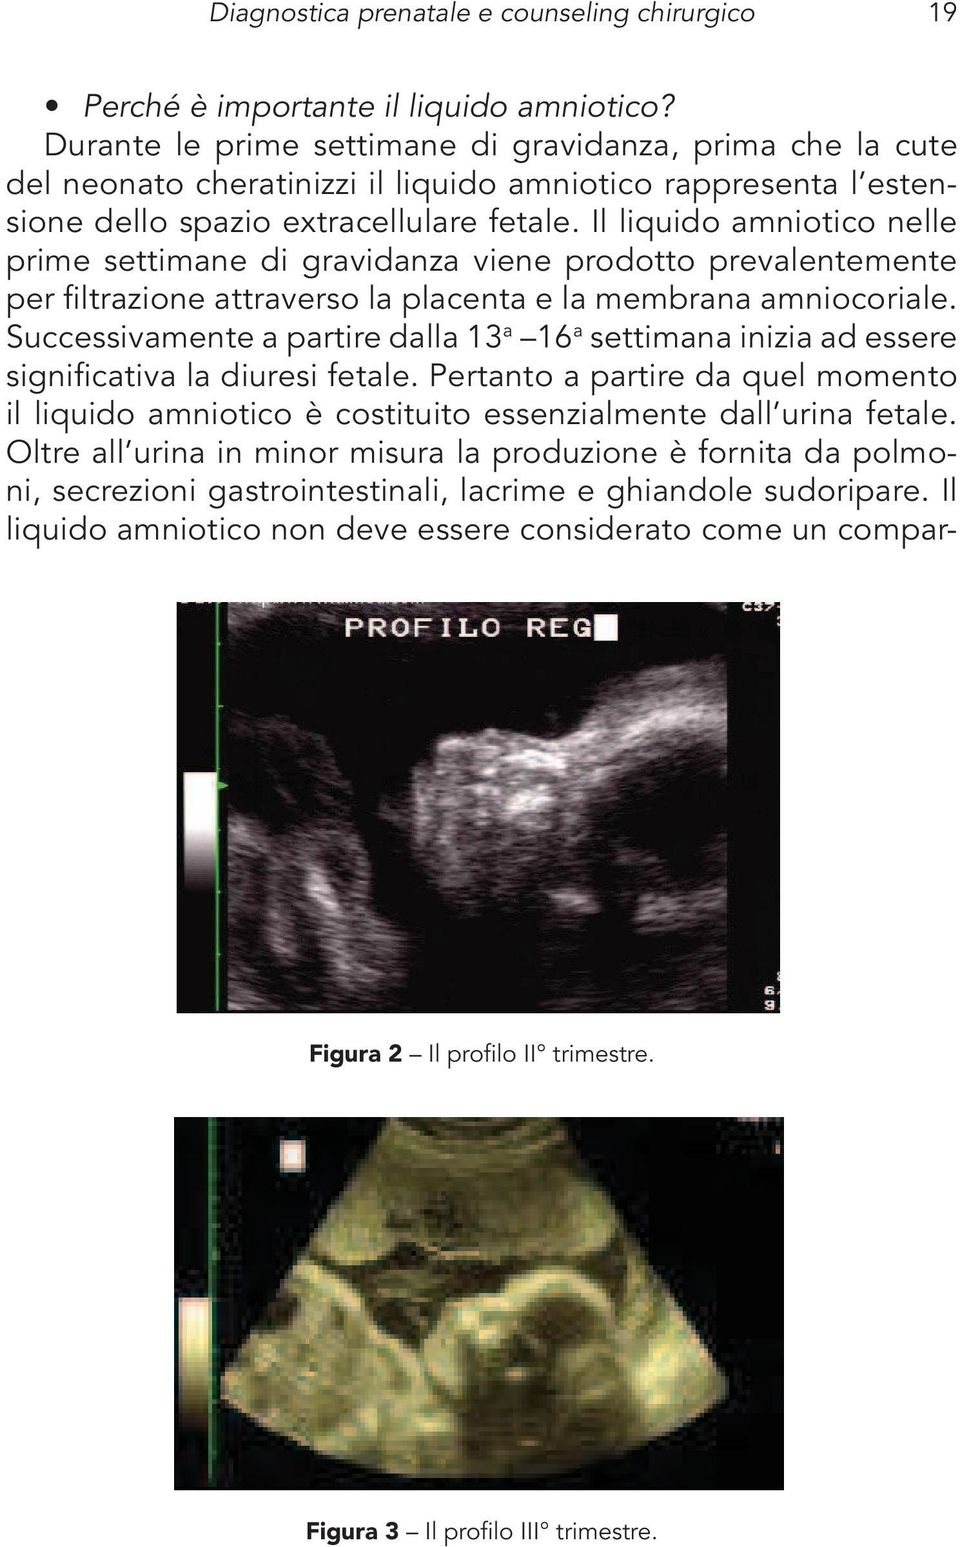 Il liquido amniotico nelle prime settimane di gravidanza viene prodotto prevalentemente per filtrazione attraverso la placenta e la membrana amniocoriale.